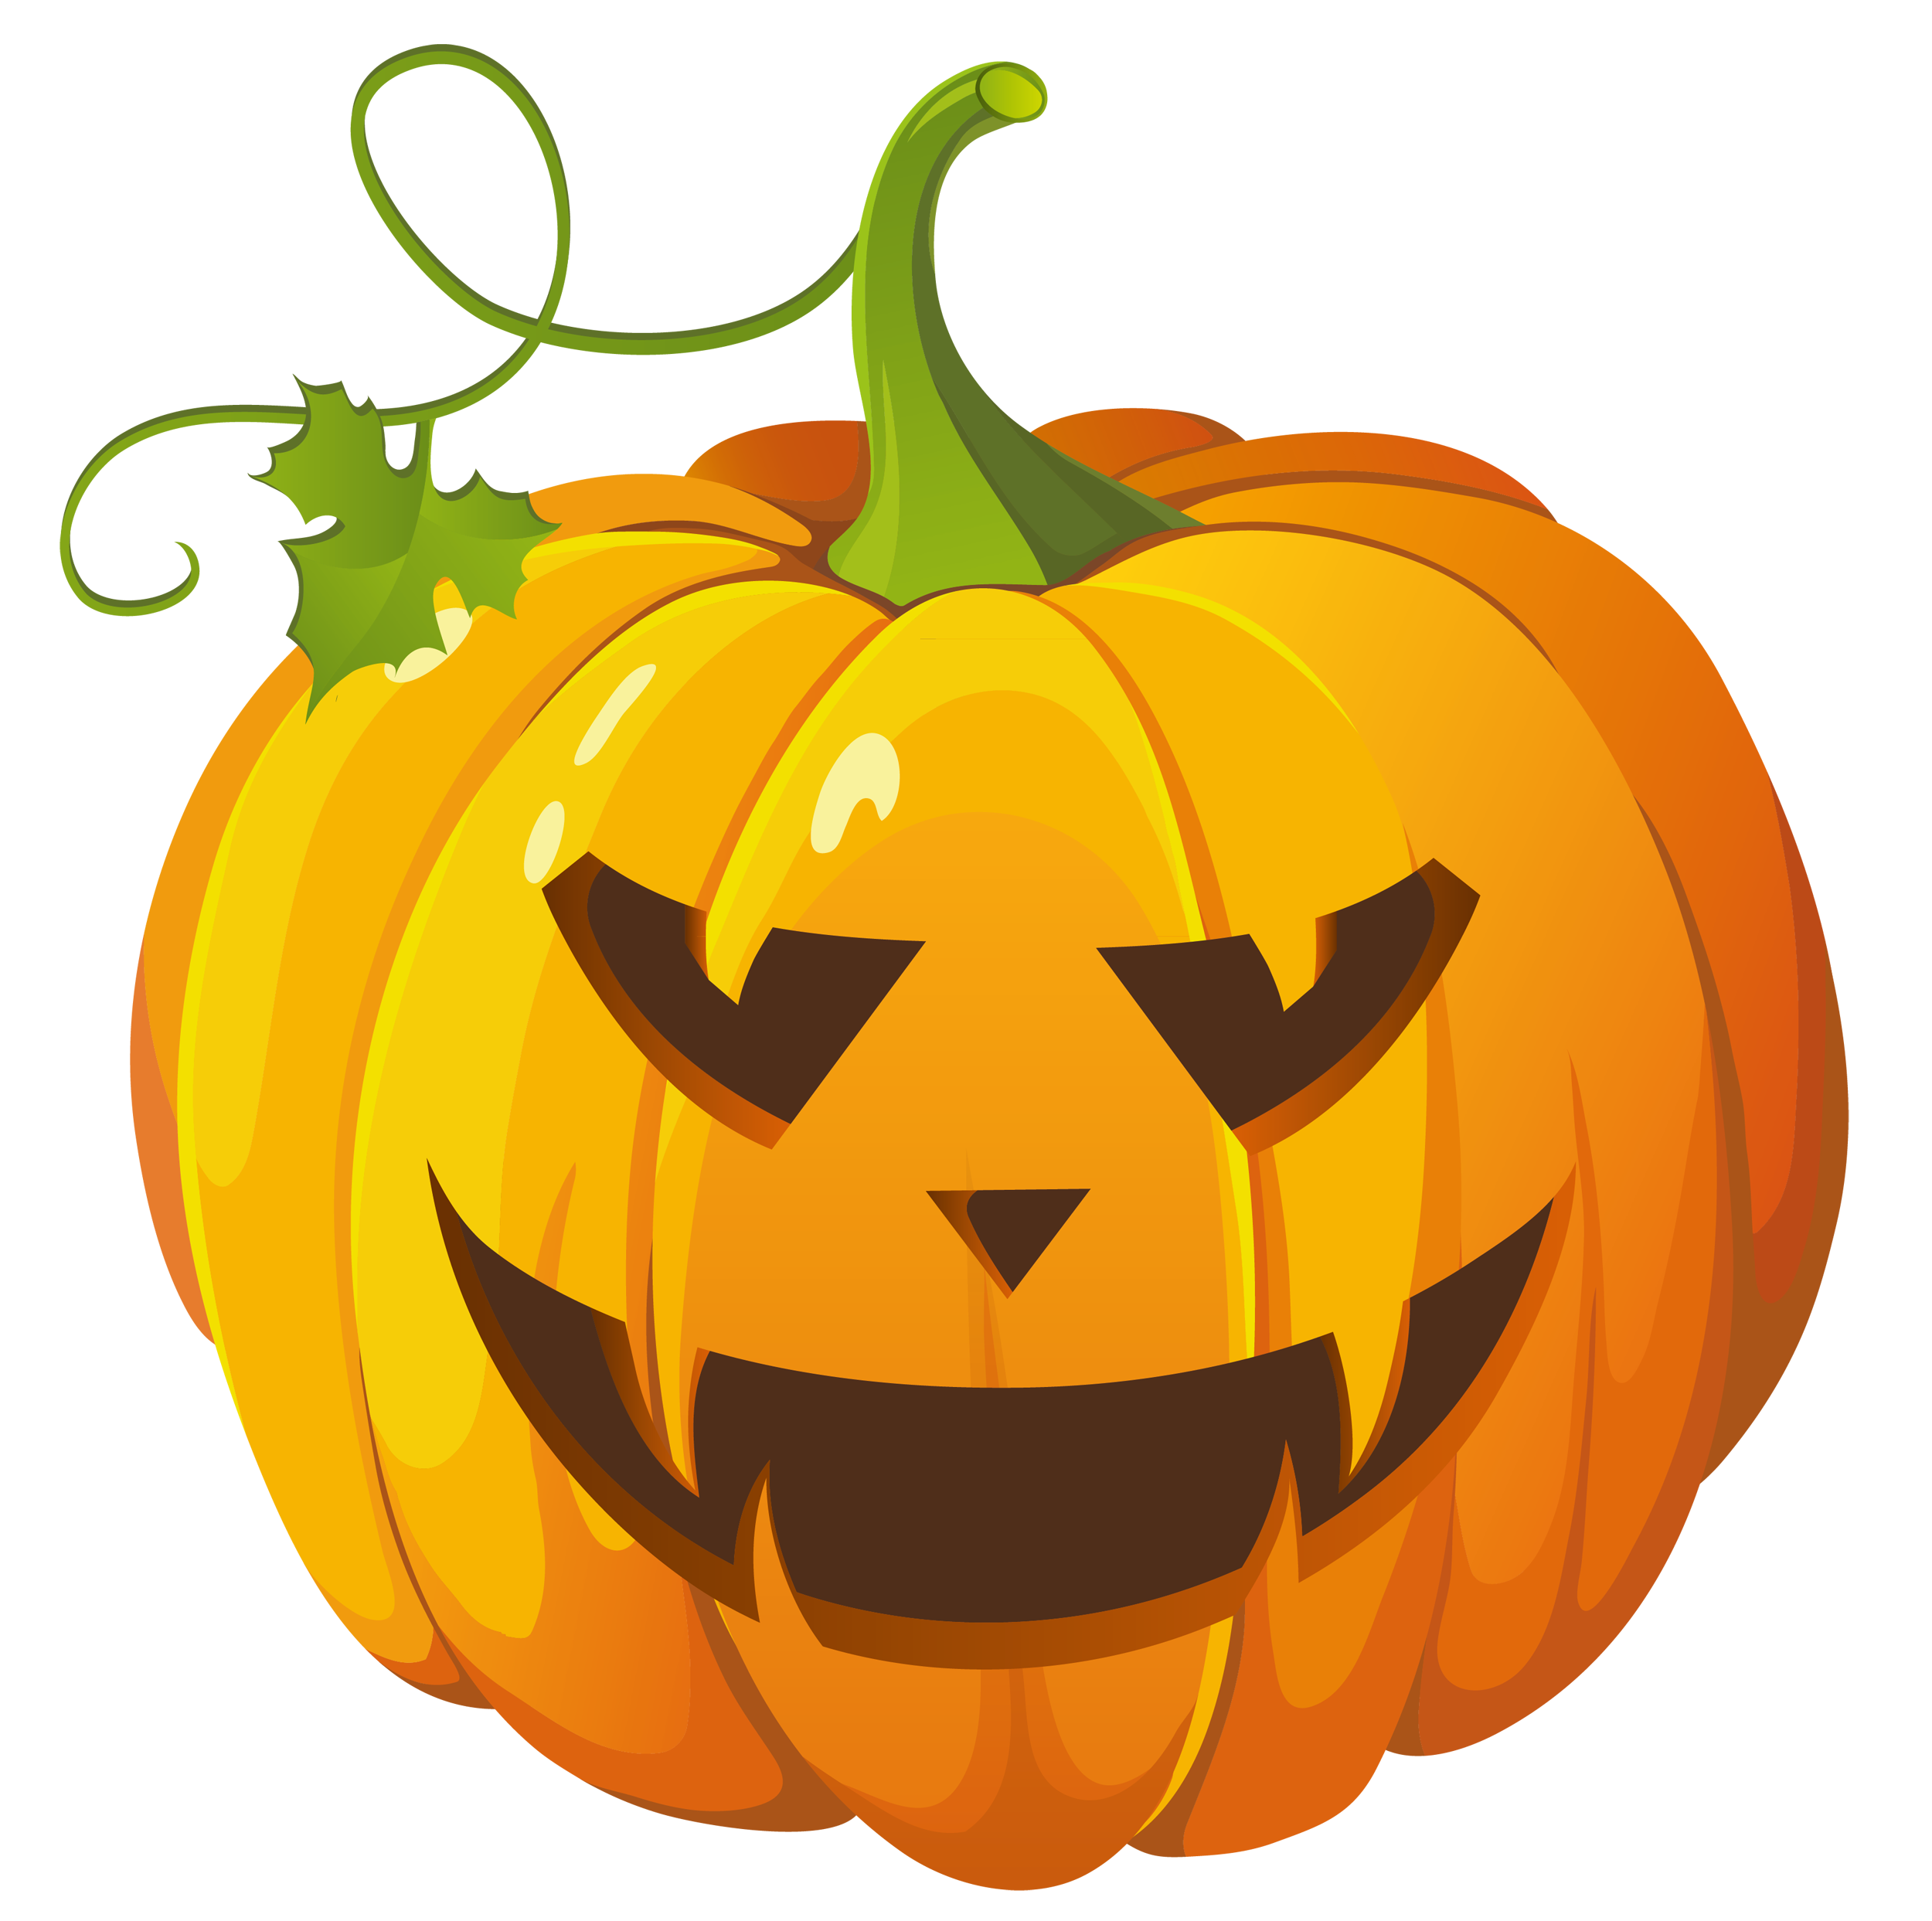 spooky clipart evil pumpkin